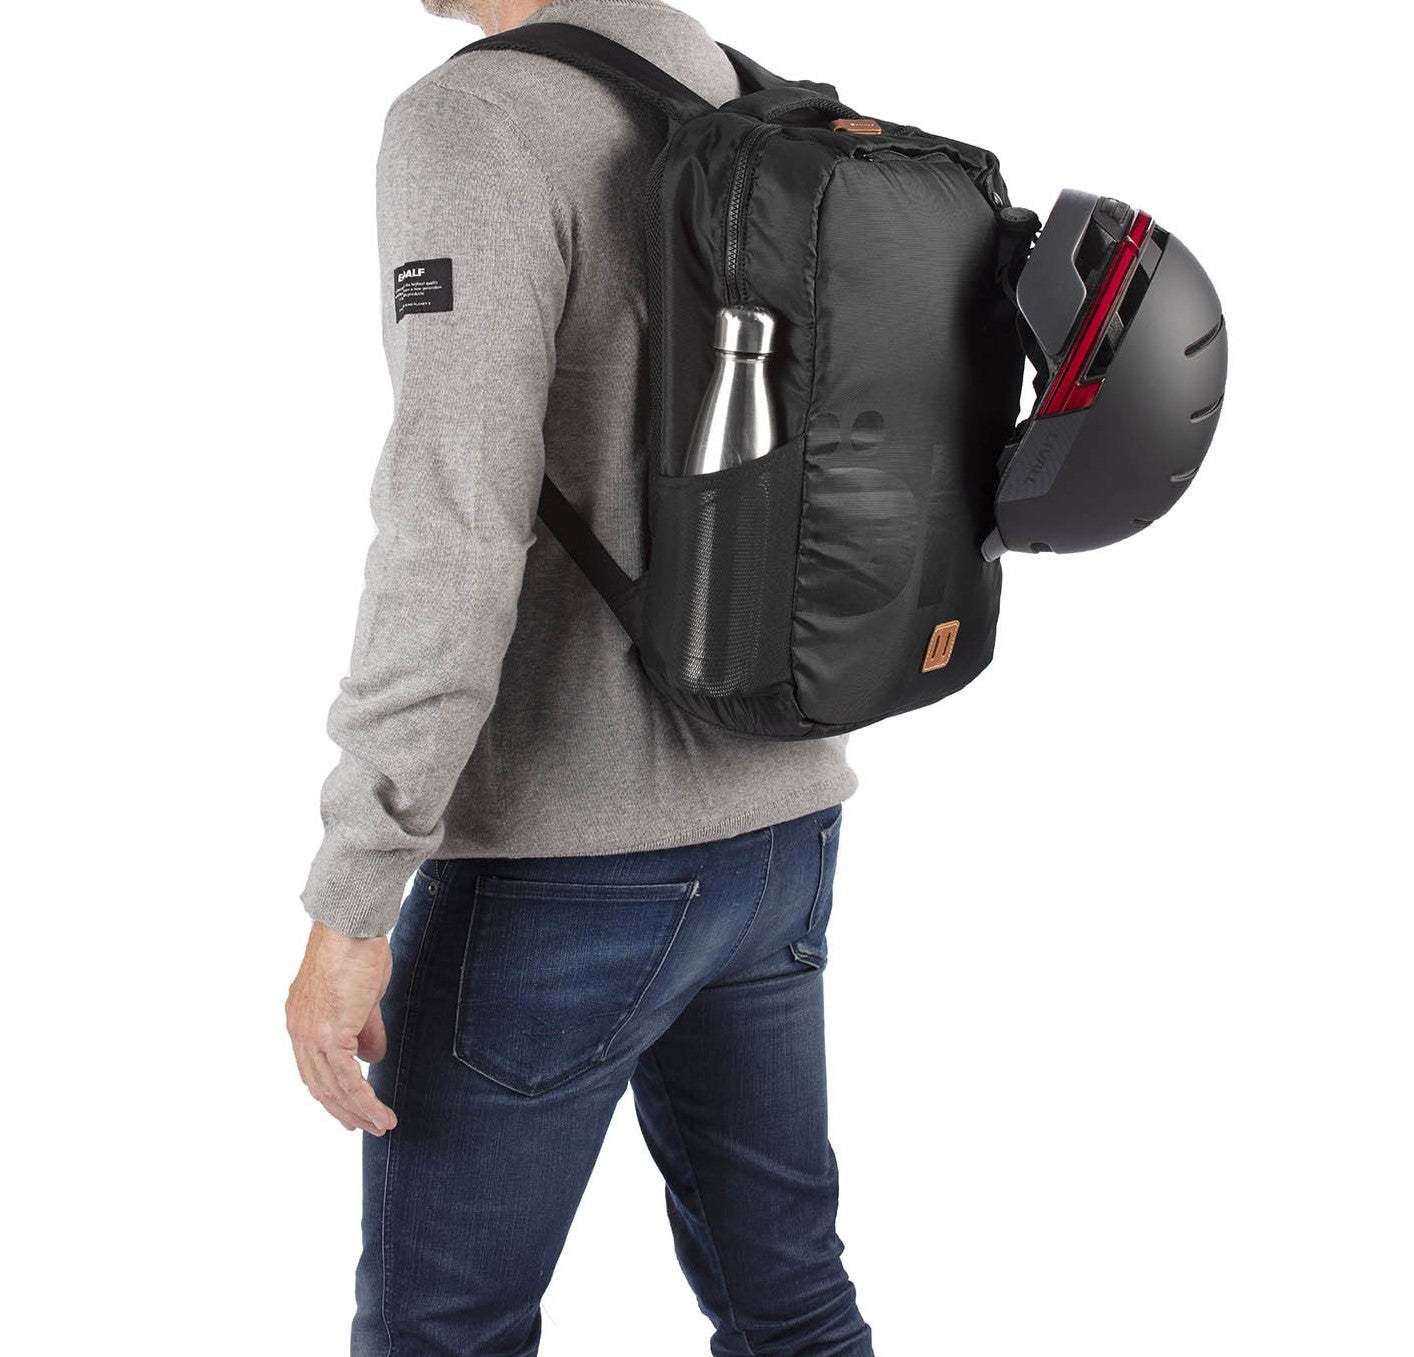 Öhll Backpack Black Bottle and Helmet